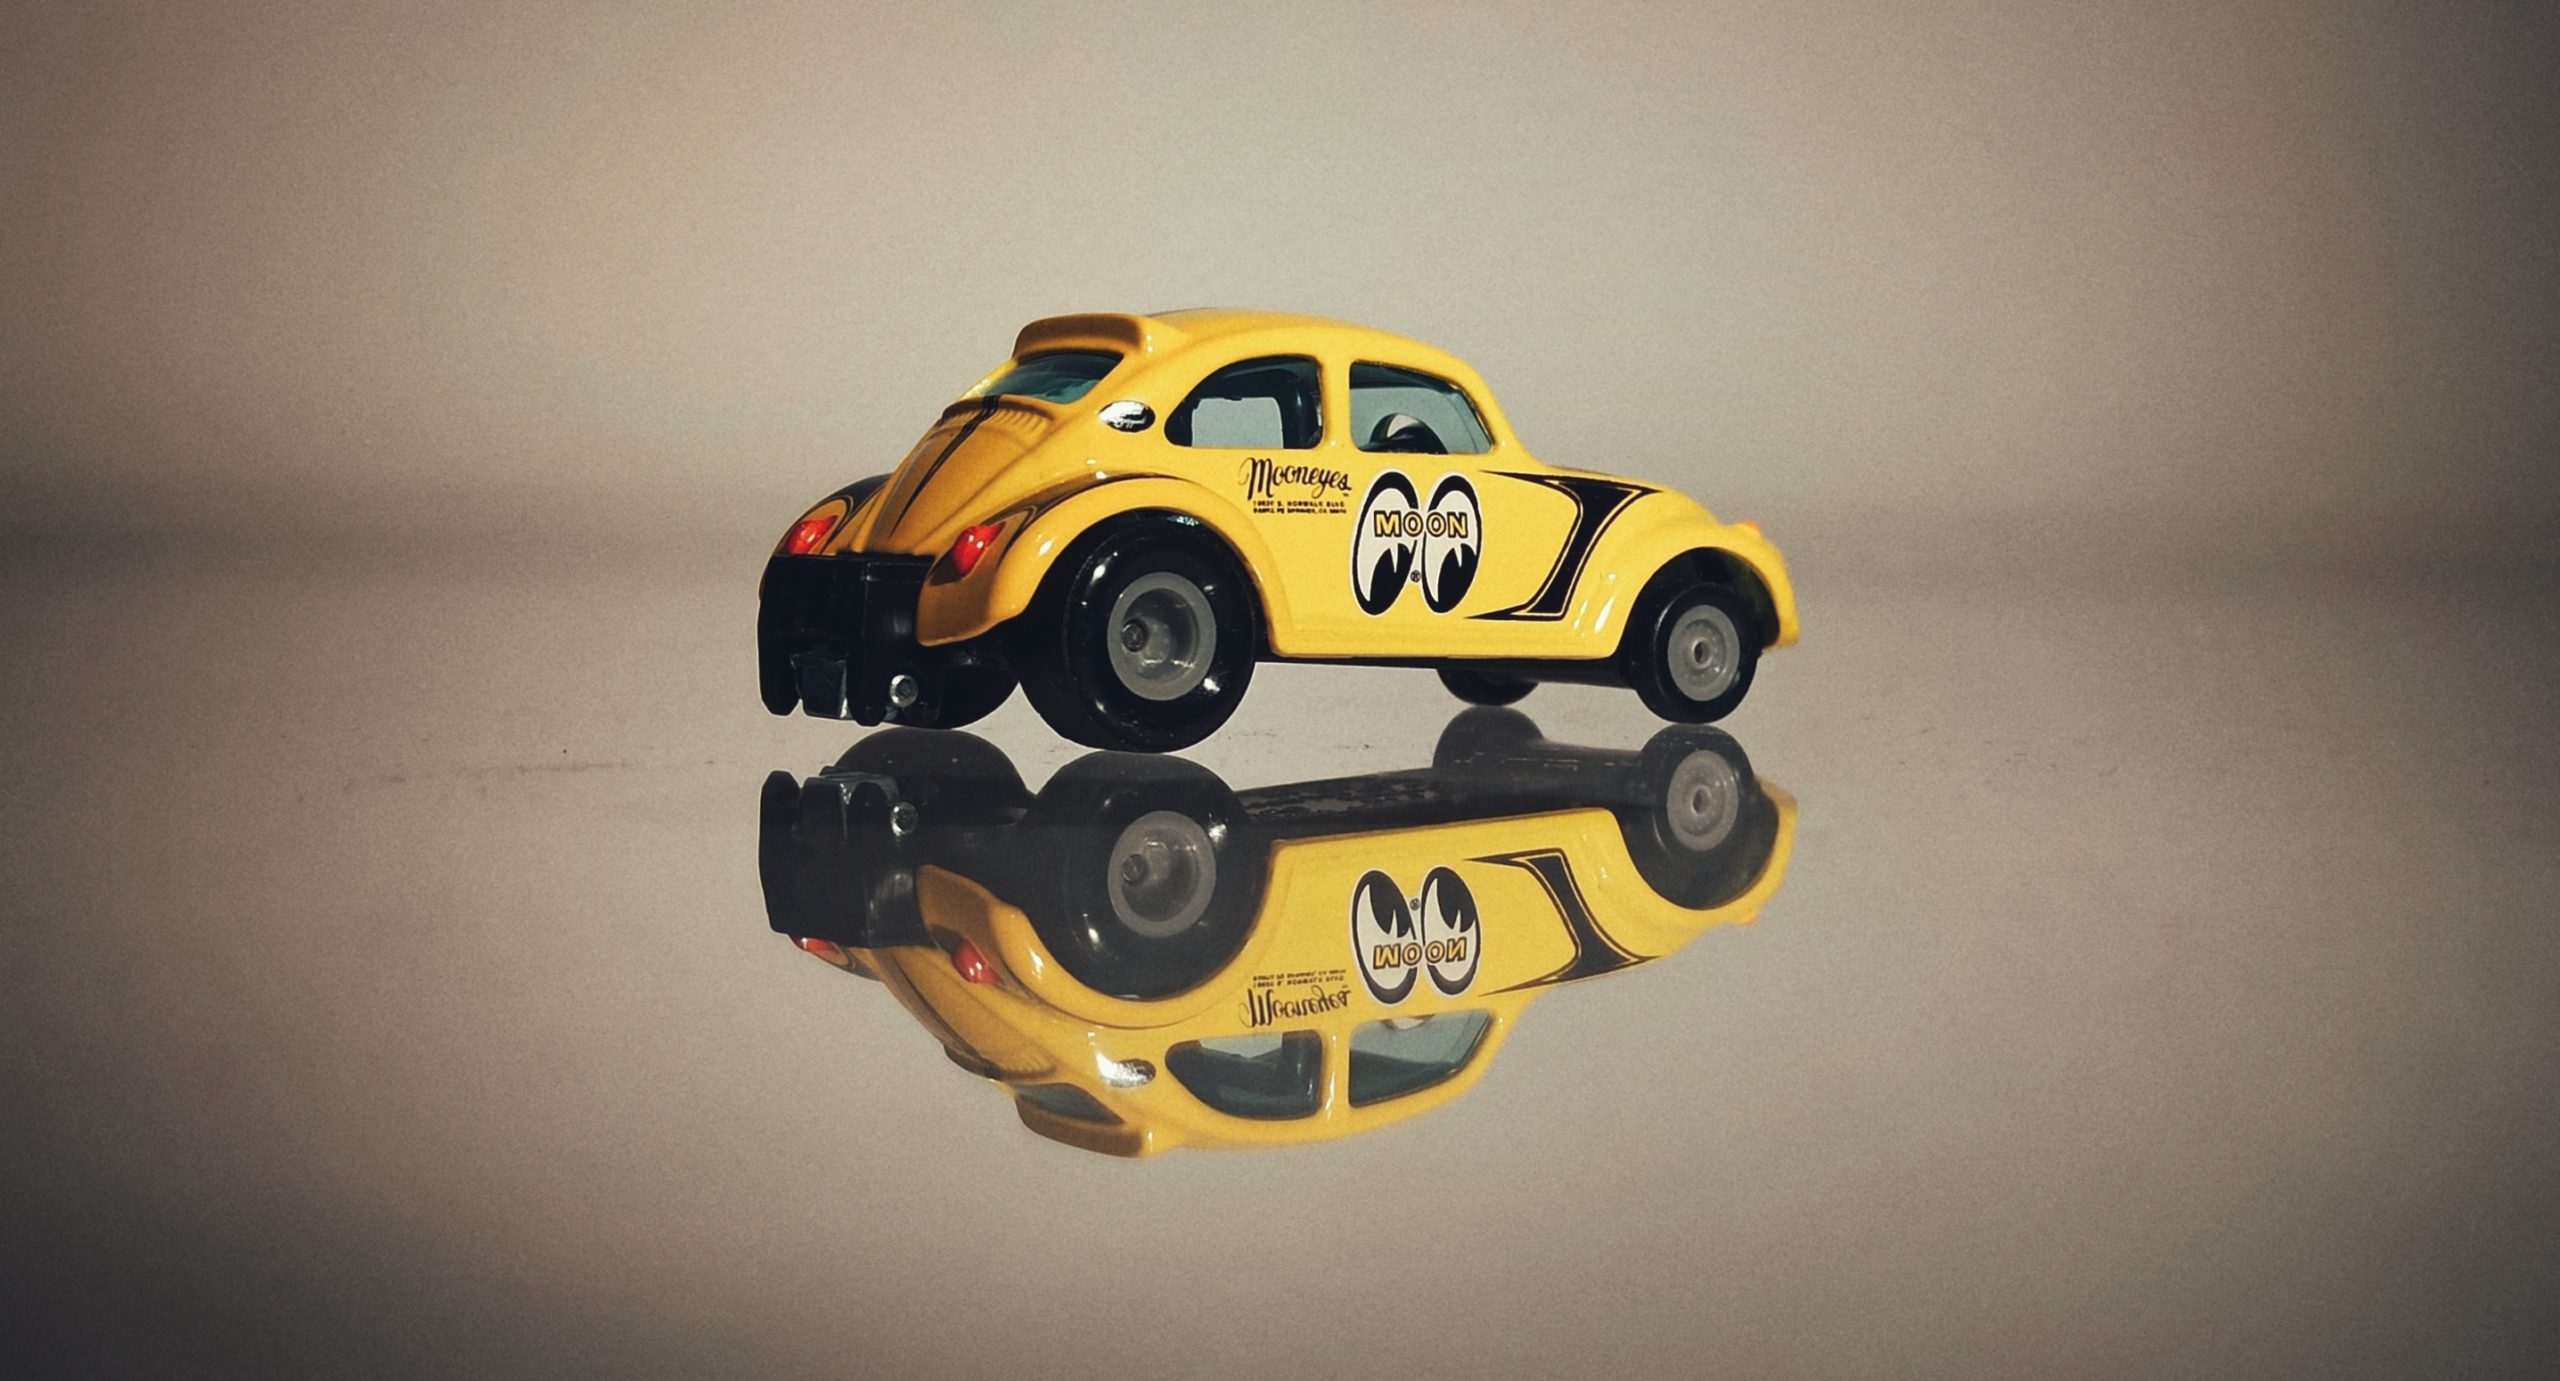 Matchbox '72 Volkswagen Beetle Dragster (HFL89) 2022 Superfast Collectors (12/20) yellow (Mooneyes)